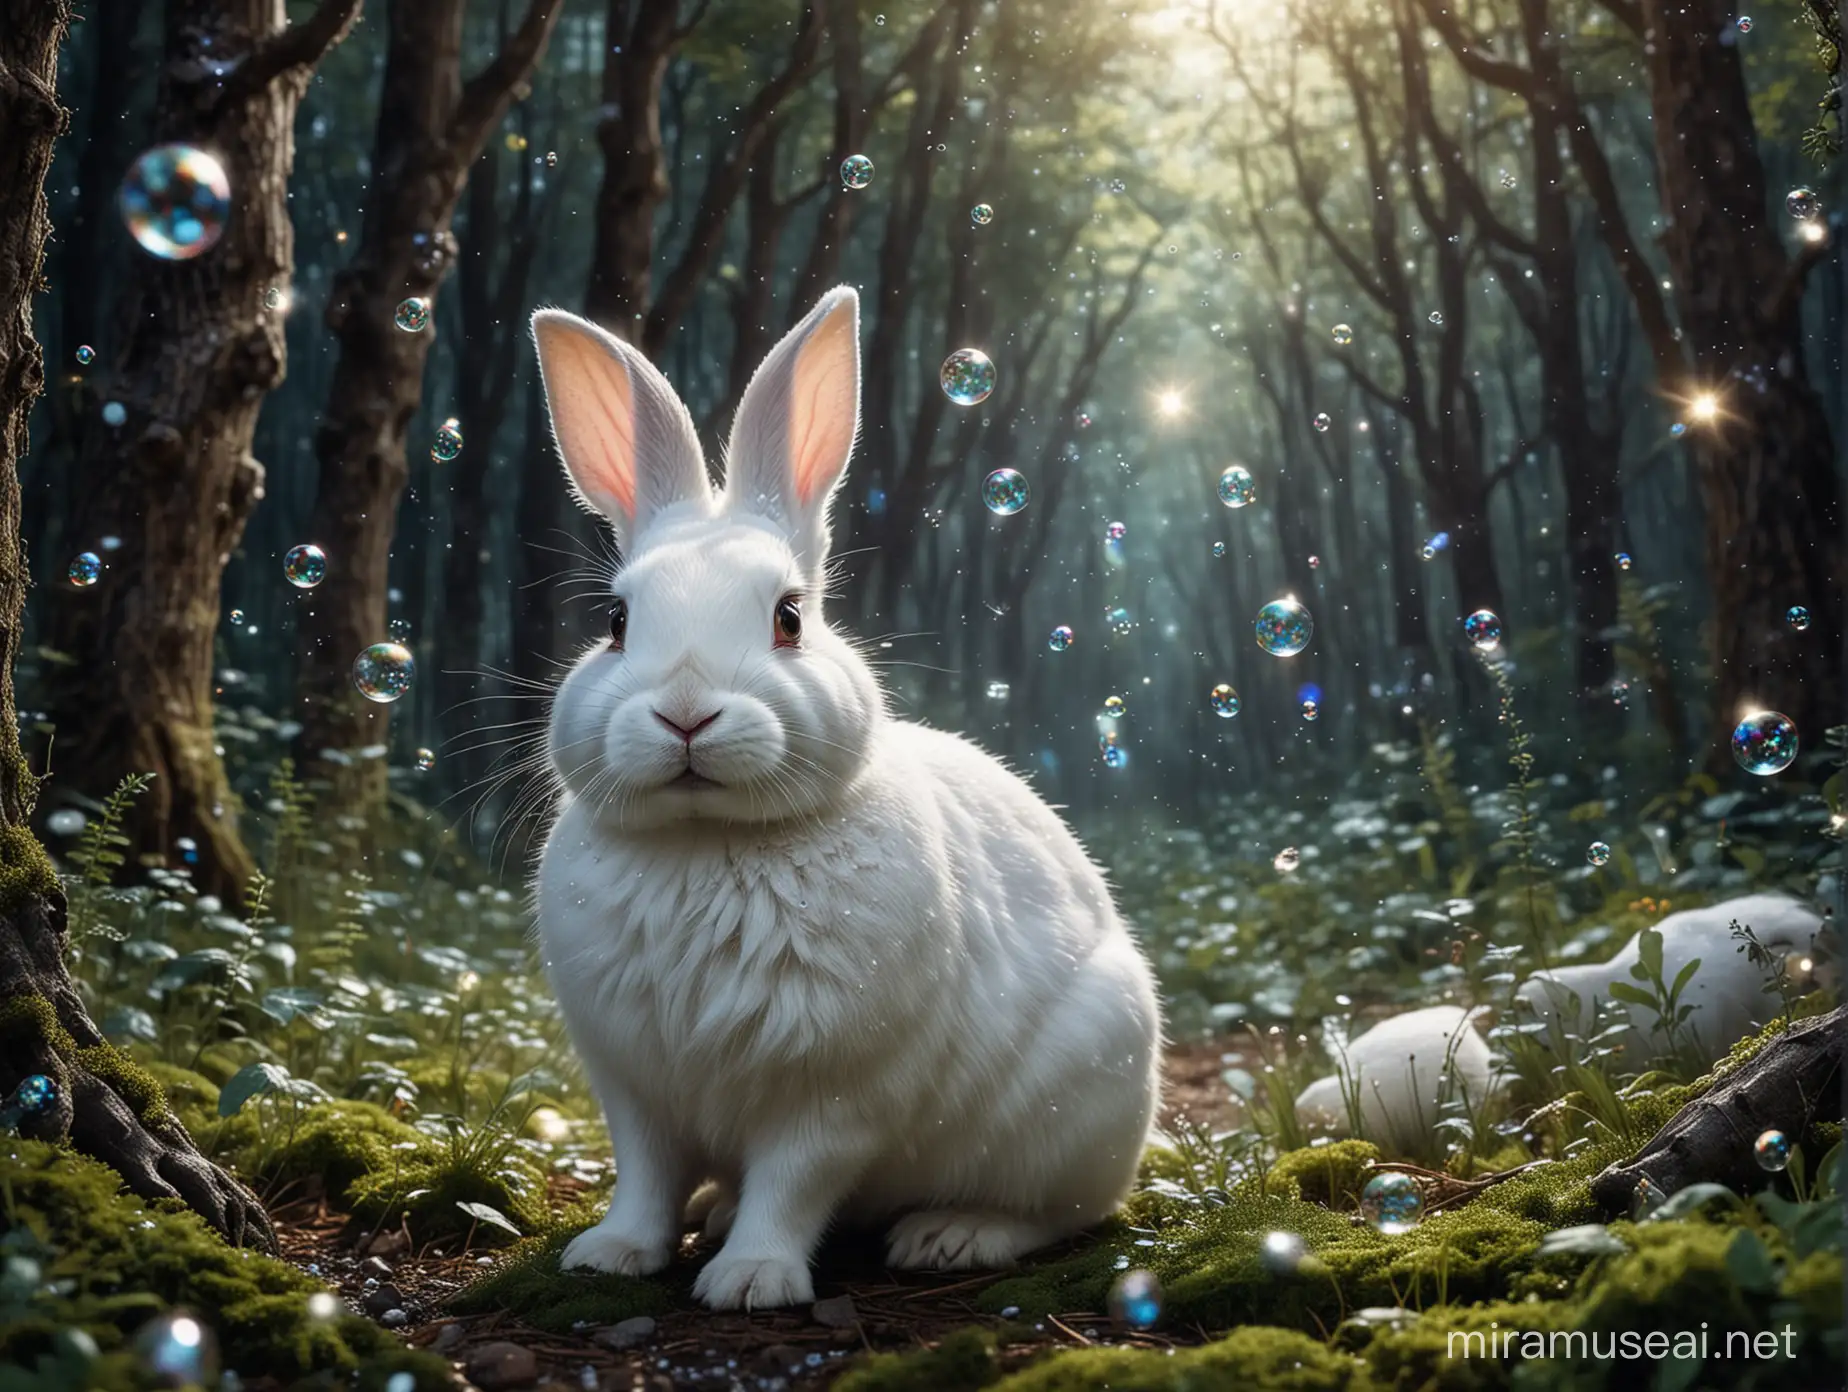 lapin blanc dans une forêt magique avec des bulles et des paillettes qui flottent partout. Il fait nuit lumineux